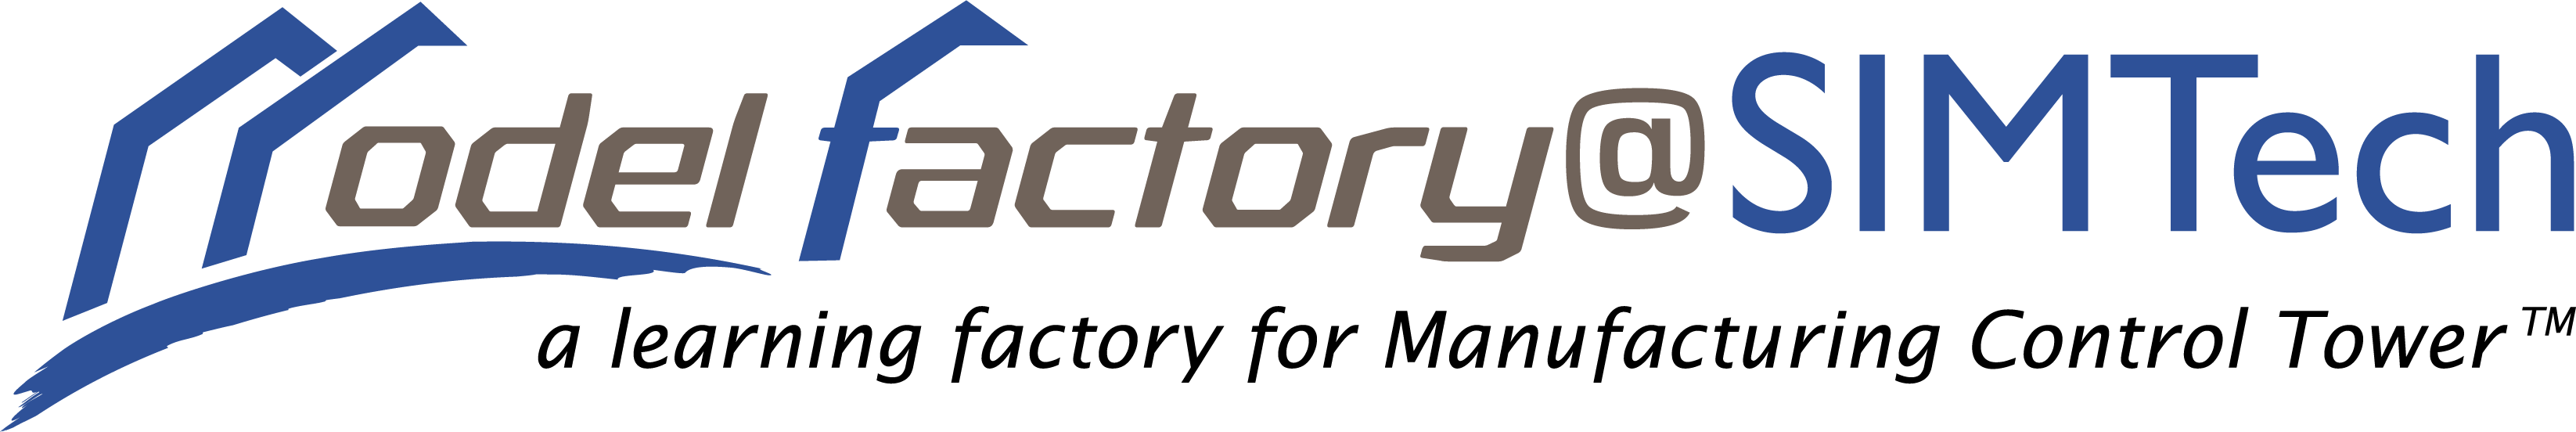 Model-Factory-tagline